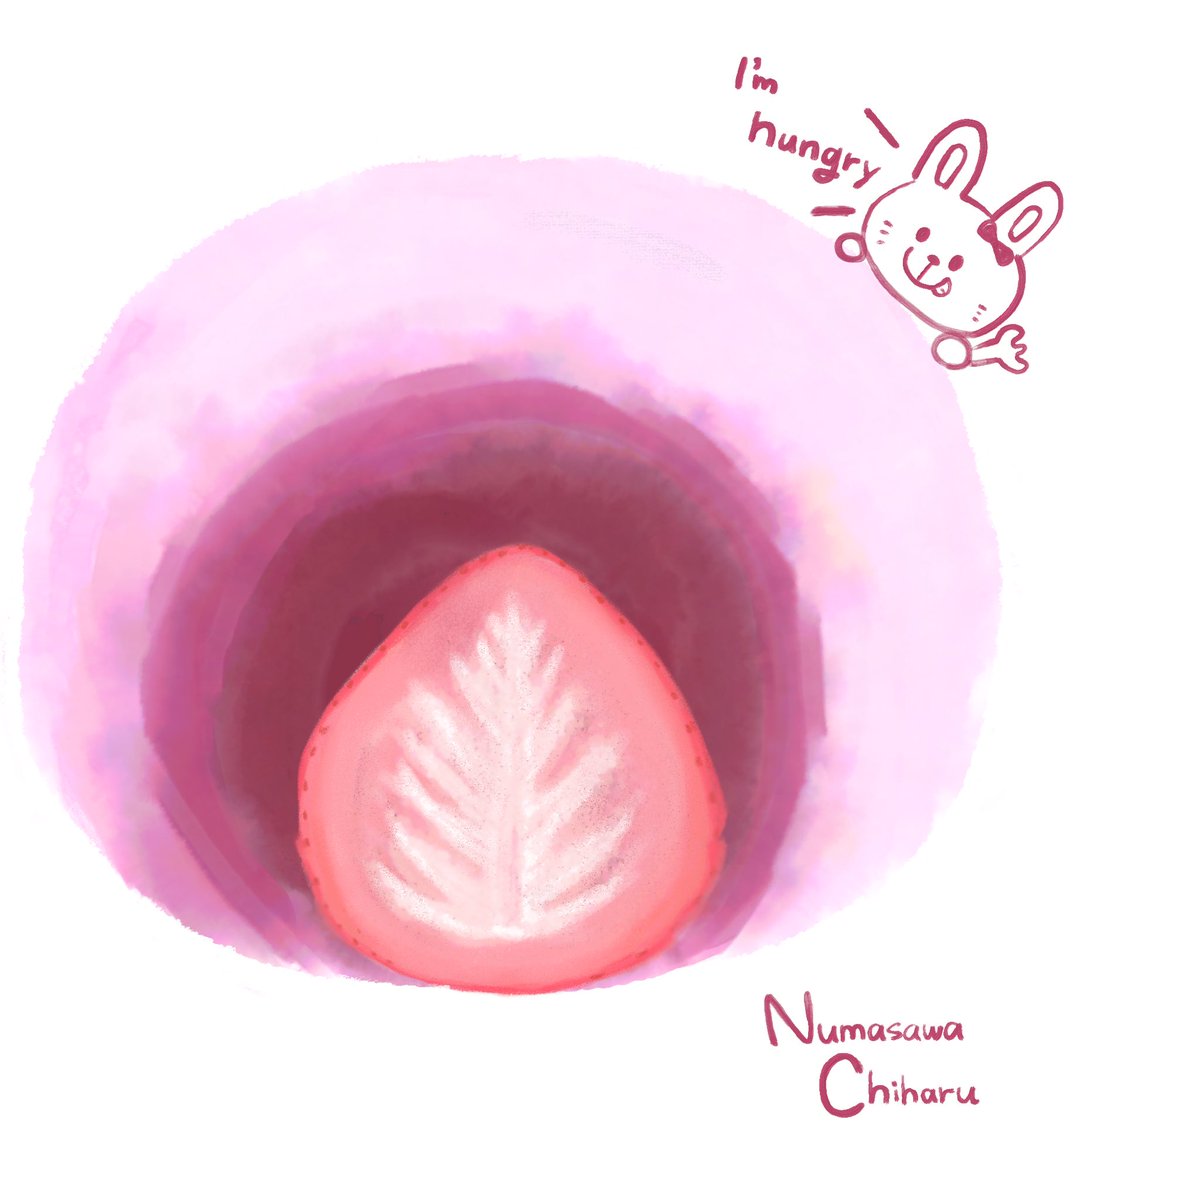 ぬまさわちはる V Twitter 昨日苺大福を食べてとても美味しかったので描いてみました ᴗ イラスト イラストレーター 苺 大福 いちご大福 食べ物イラスト いちごイラスト かわいいイラスト